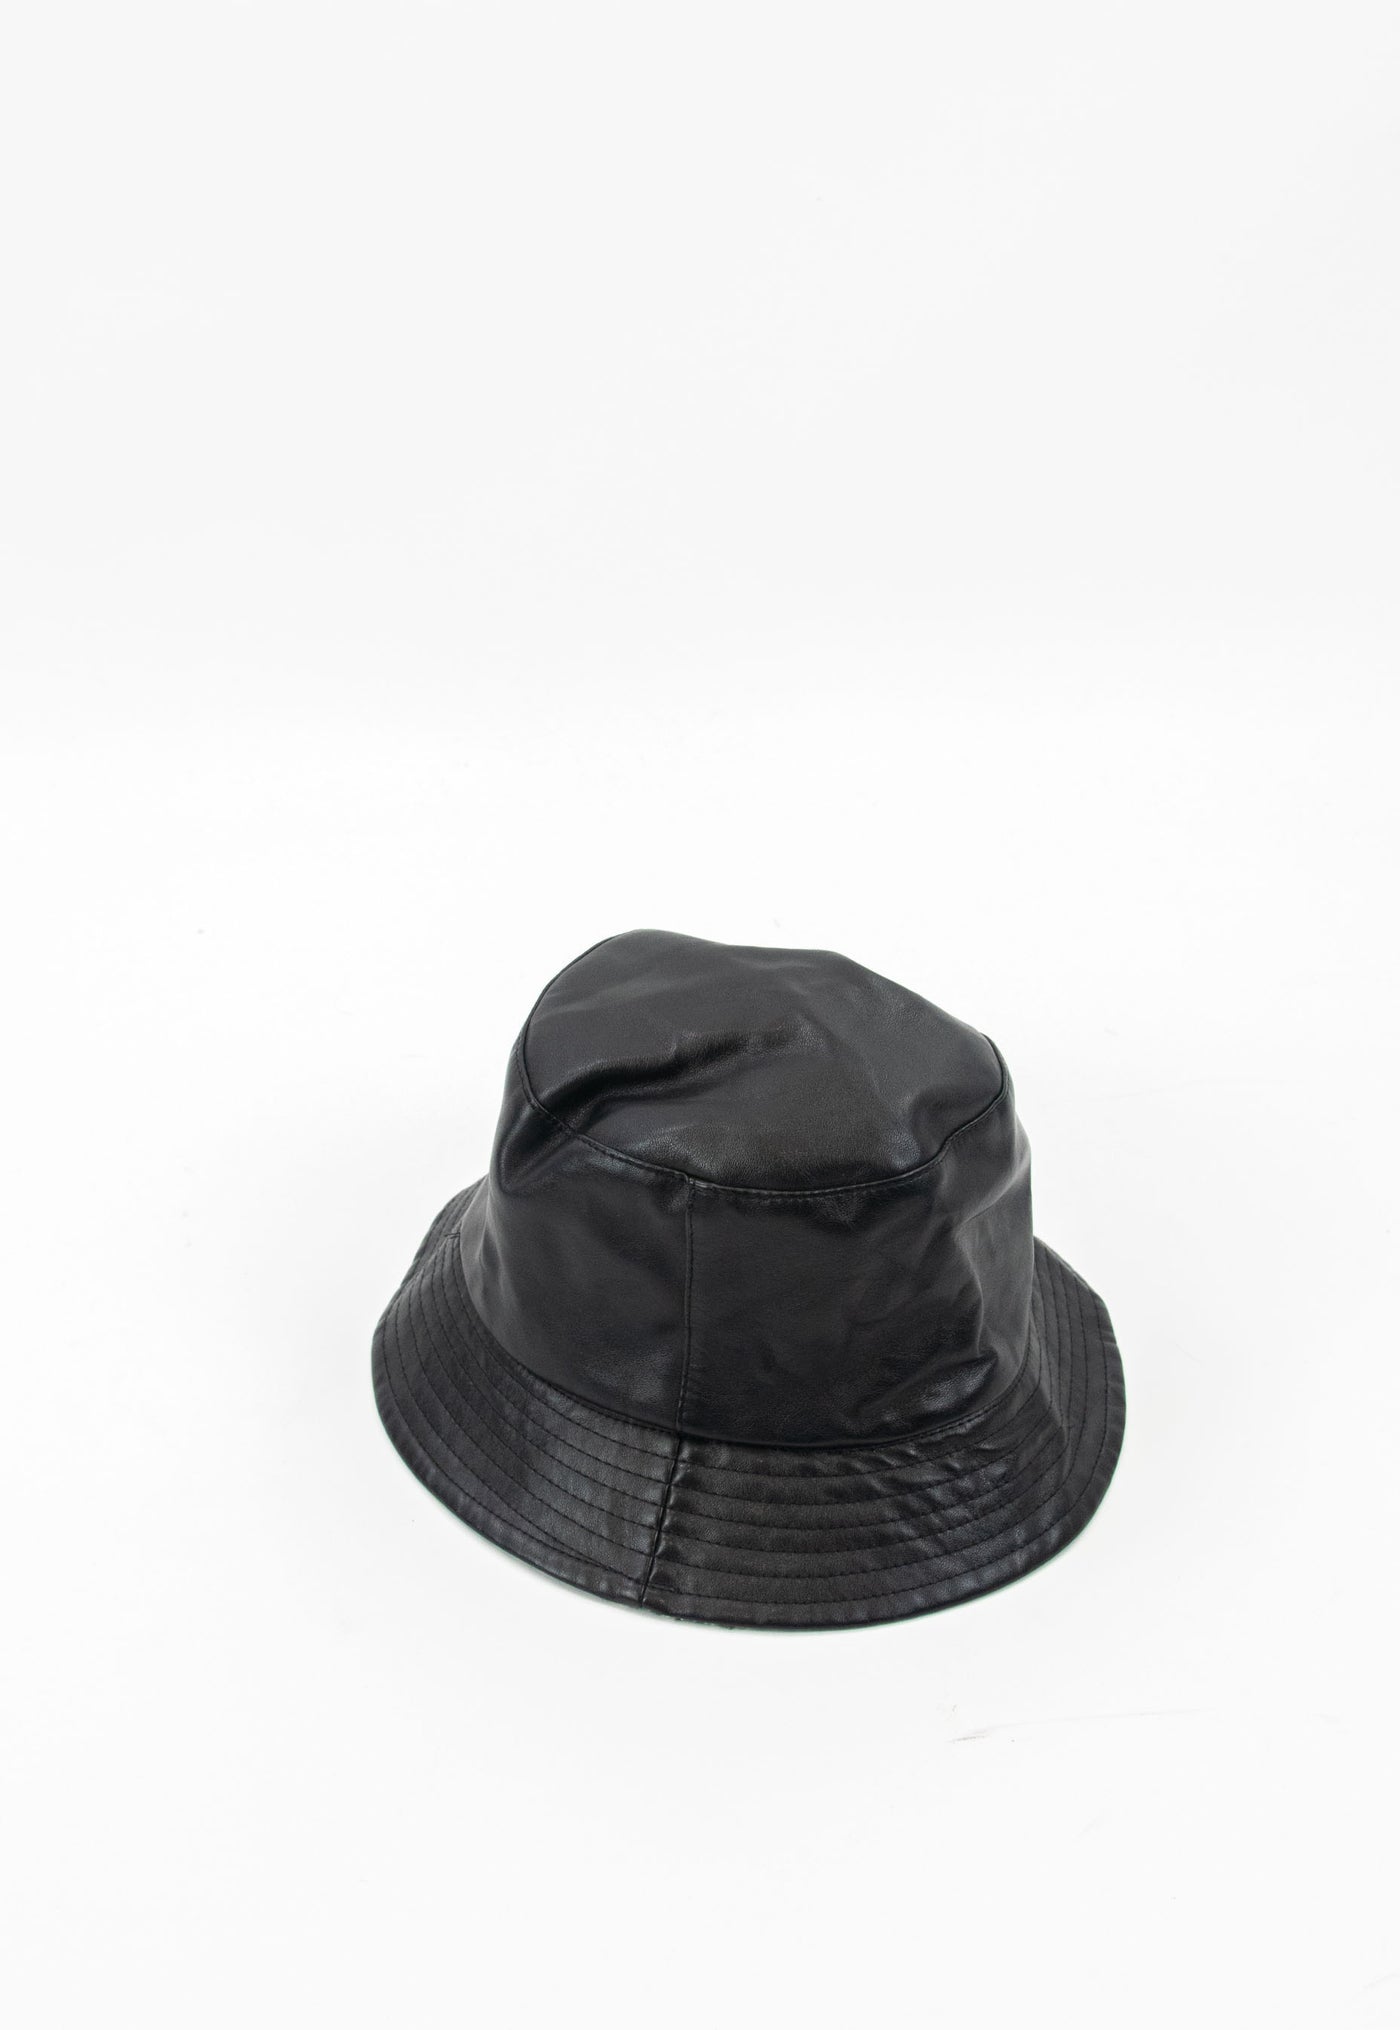 Bucket hat negro de piel reversible